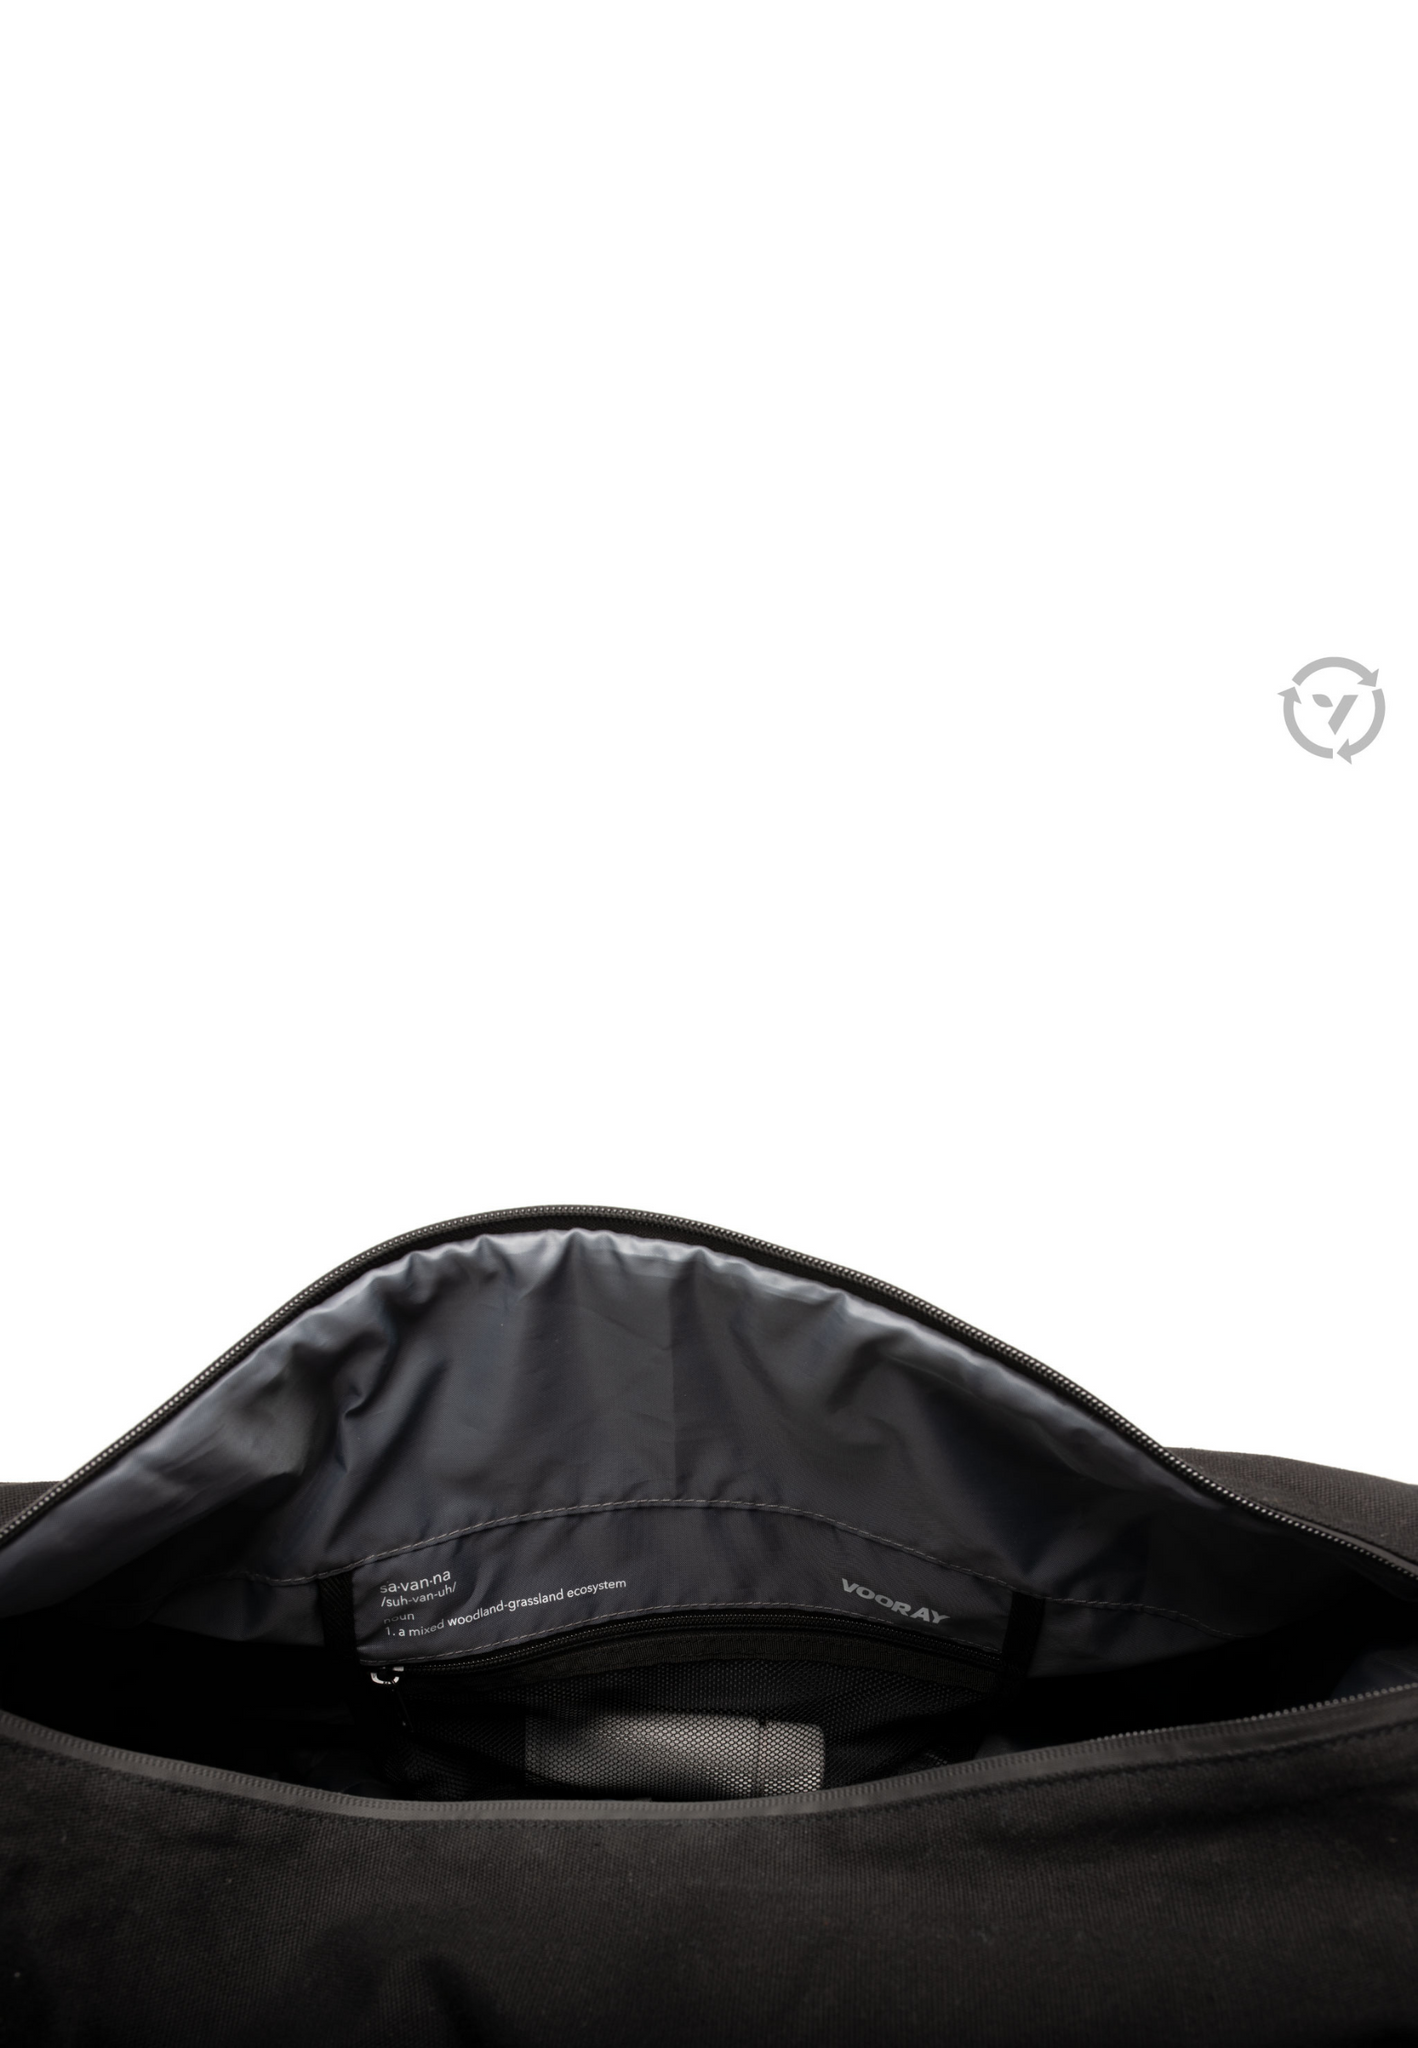 Vooray Savanna Organic Duffel Obsidian - la bolsa de viaje, la bolsa deporte y la travel bag esenciales